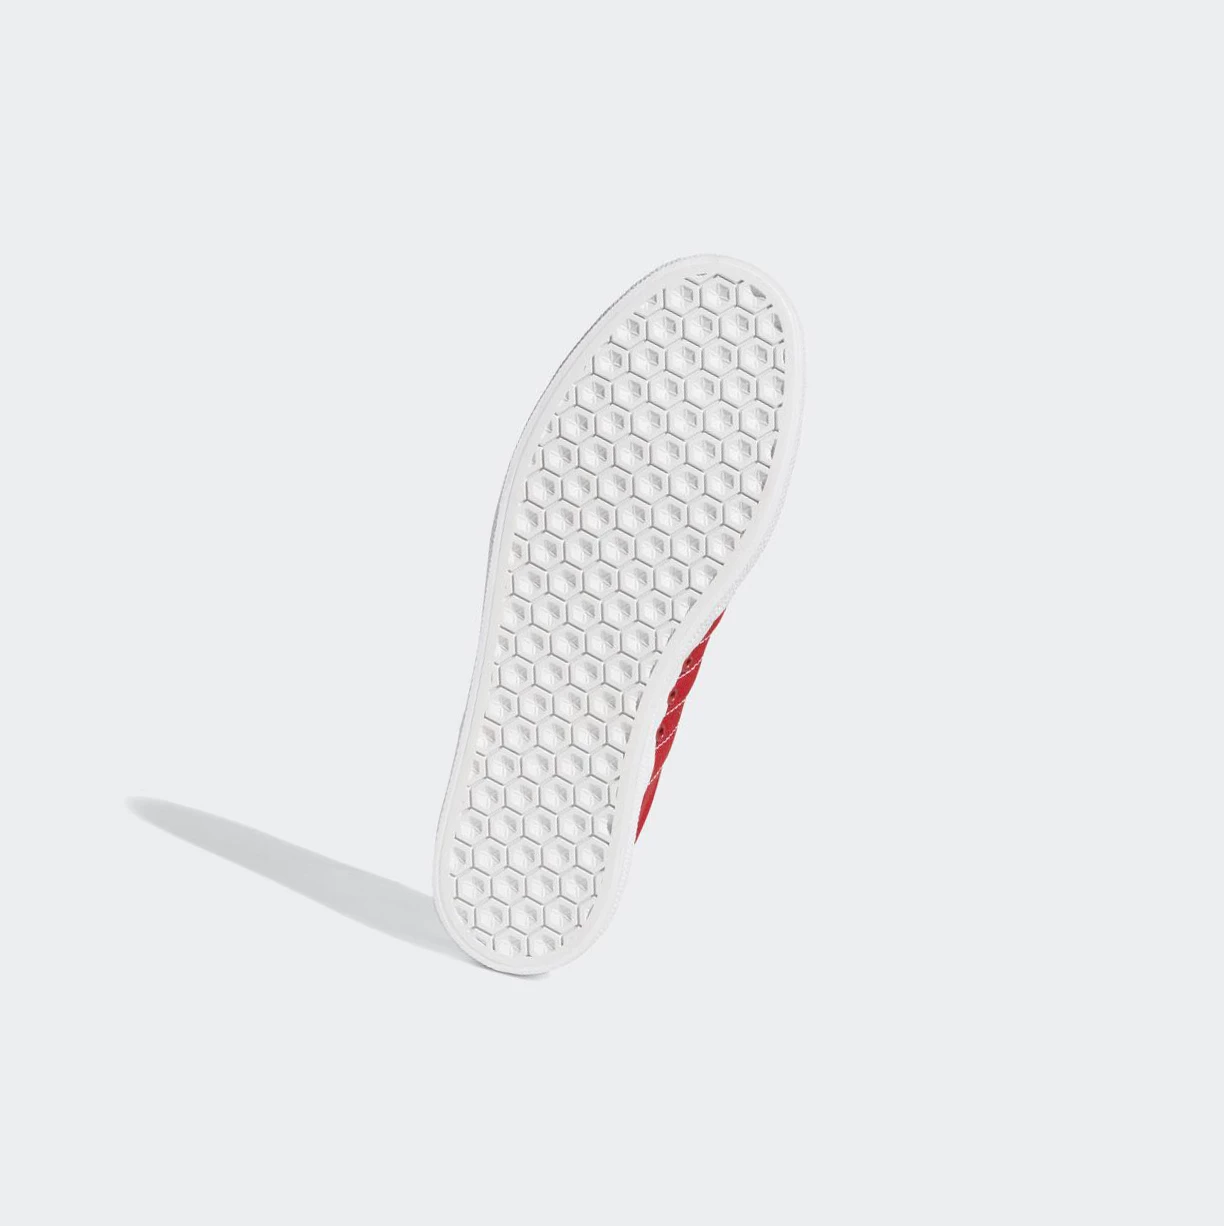 Originálne Topánky Adidas 3MC Panske Červené | 407SKFOVKLM